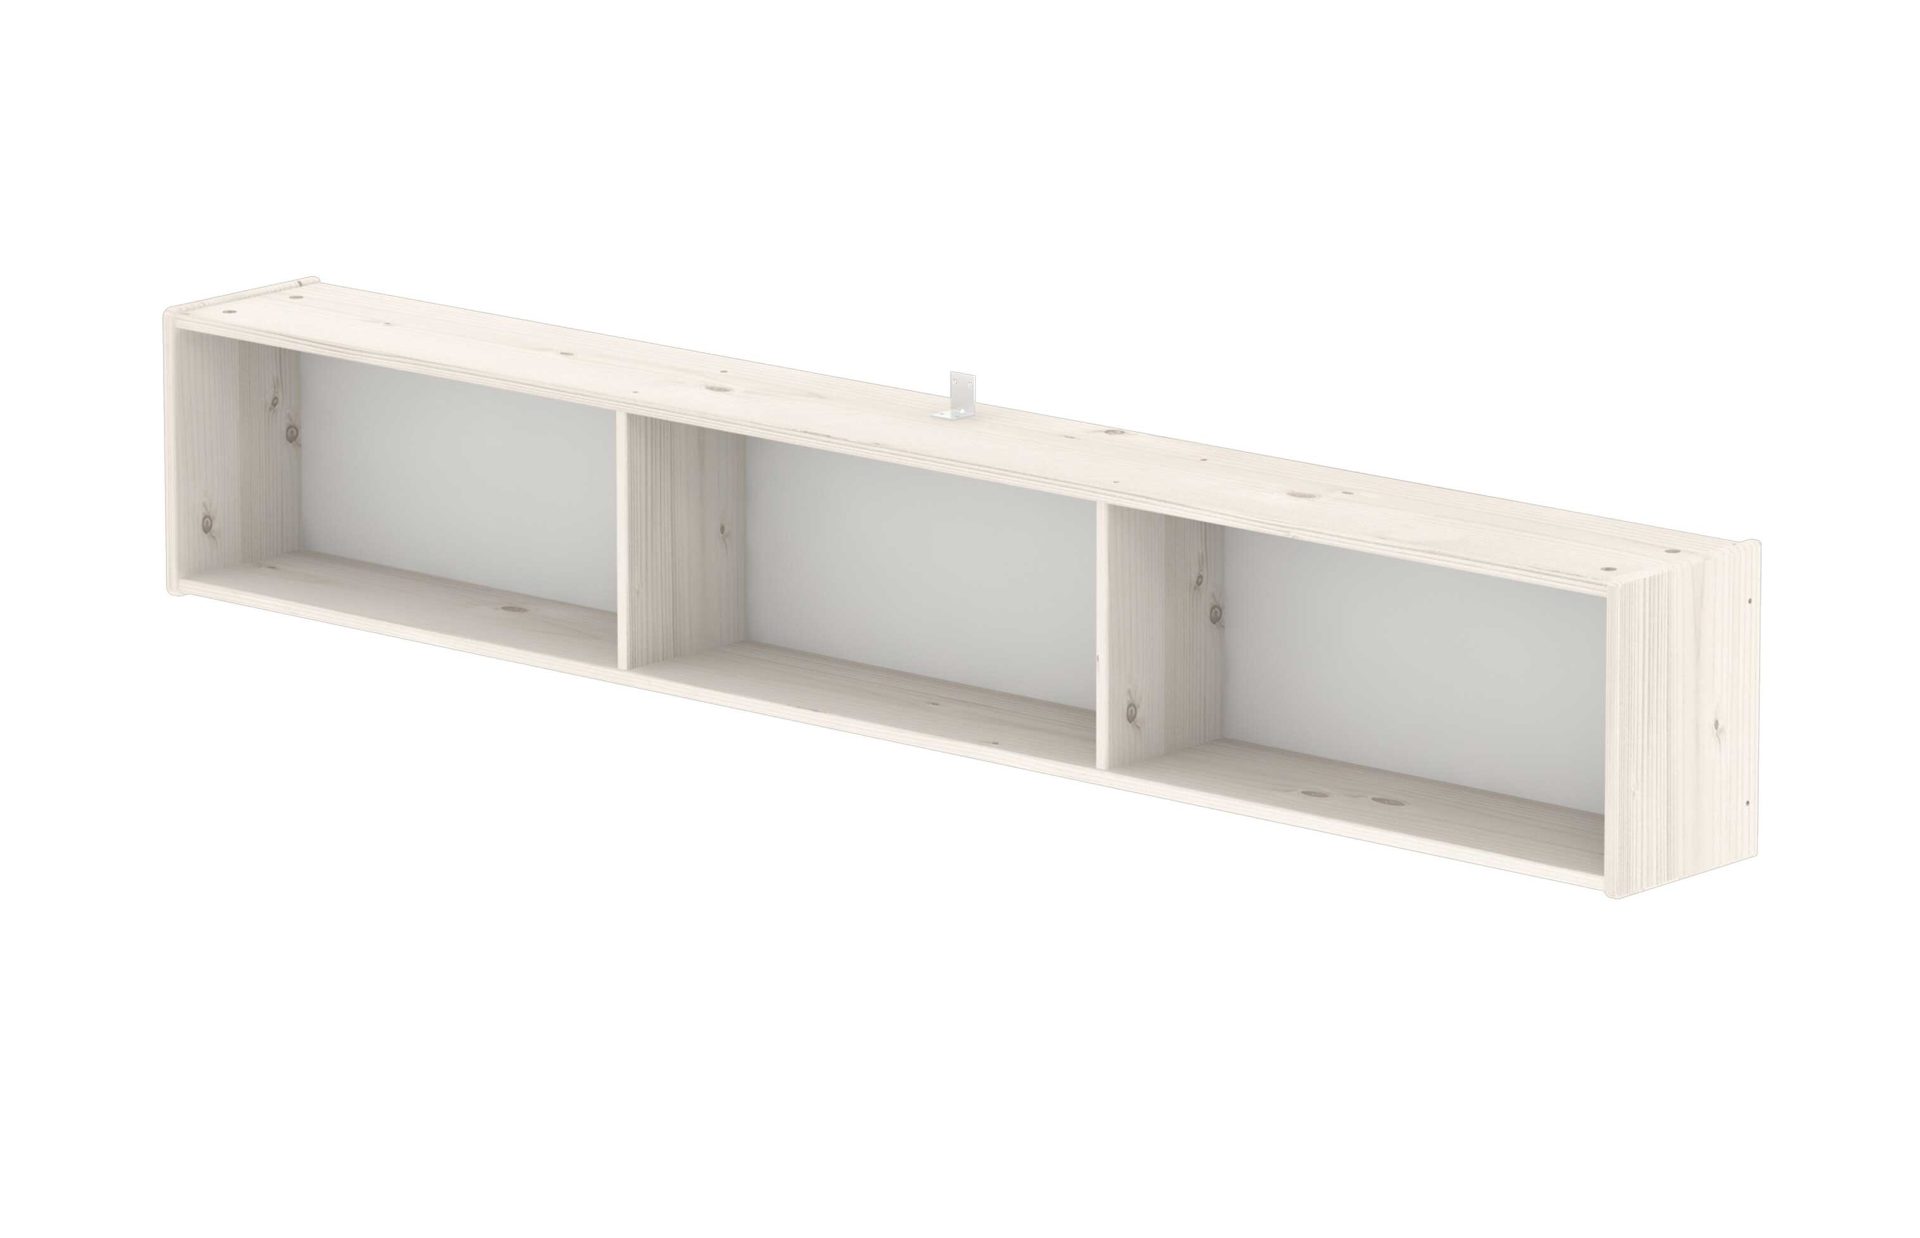 Tischplatte Flexa aus Holz in Weiß FLEXA Bücherregal  für Classic Betten, Kiefer weiß lasiert - Länge ca. 187 cm